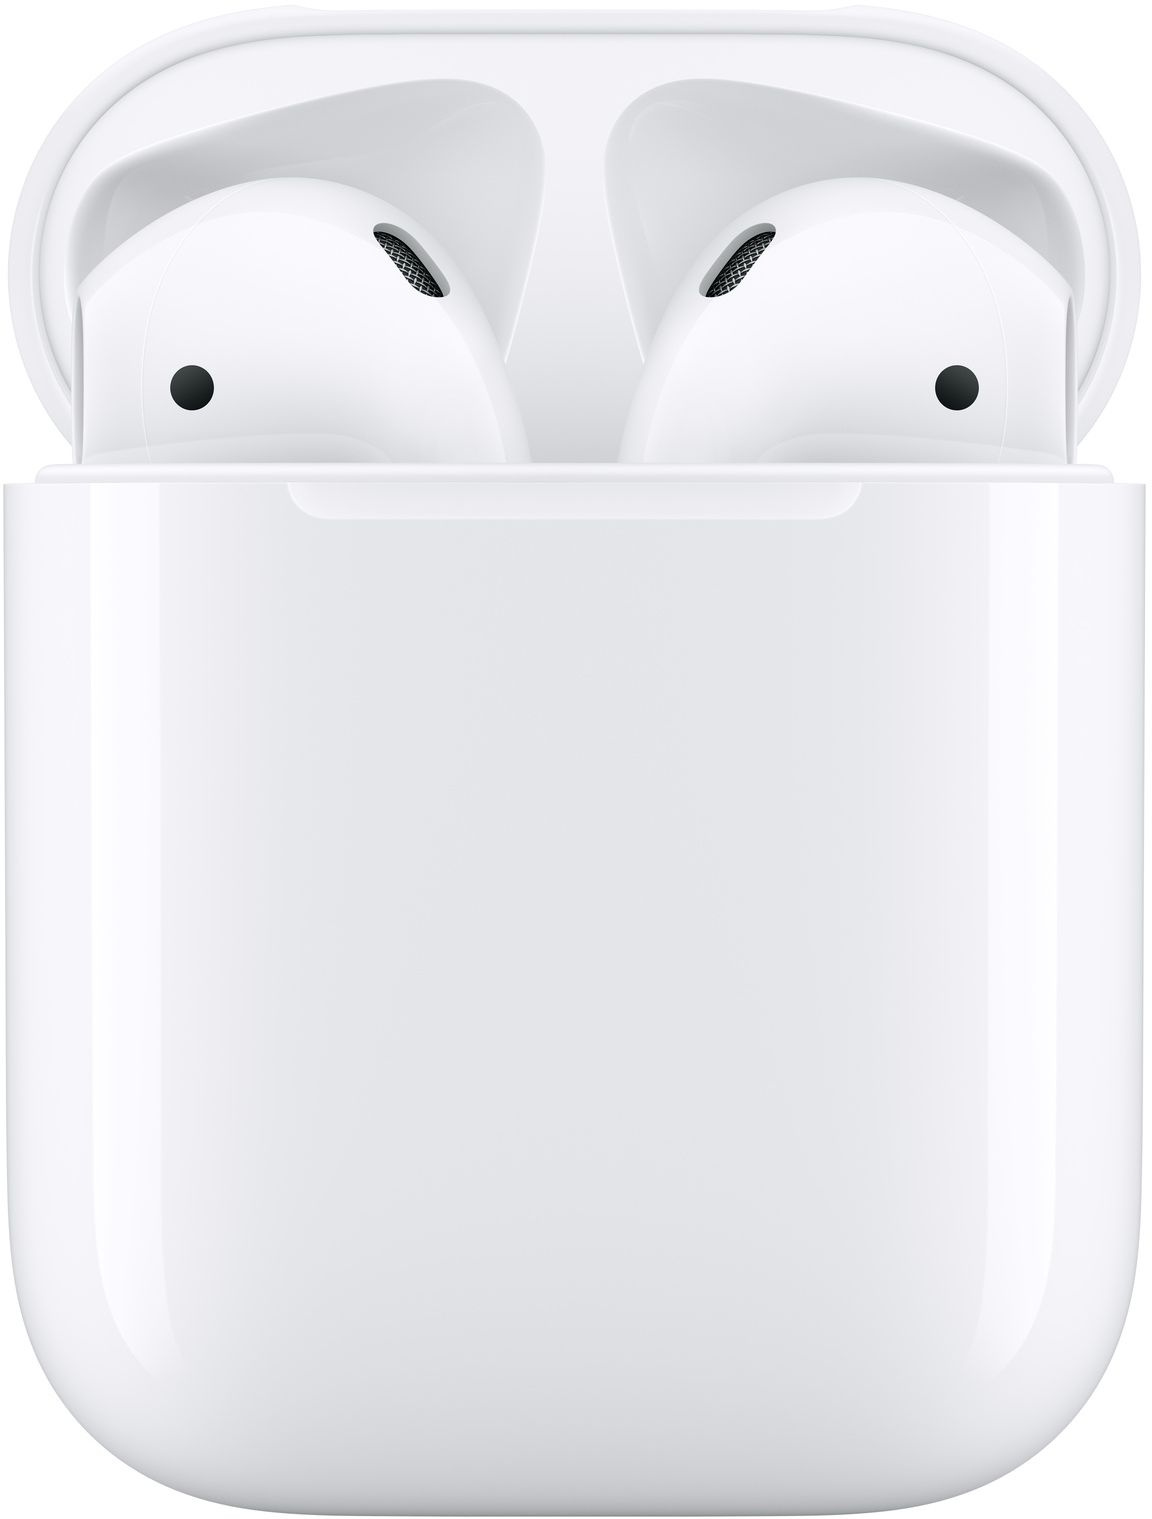 Гарнитура вкладыши Apple AirPods 2 A2032,A2031,A1602 белый беспроводные bluetooth в ушной раковине (MV7N2AM/A)